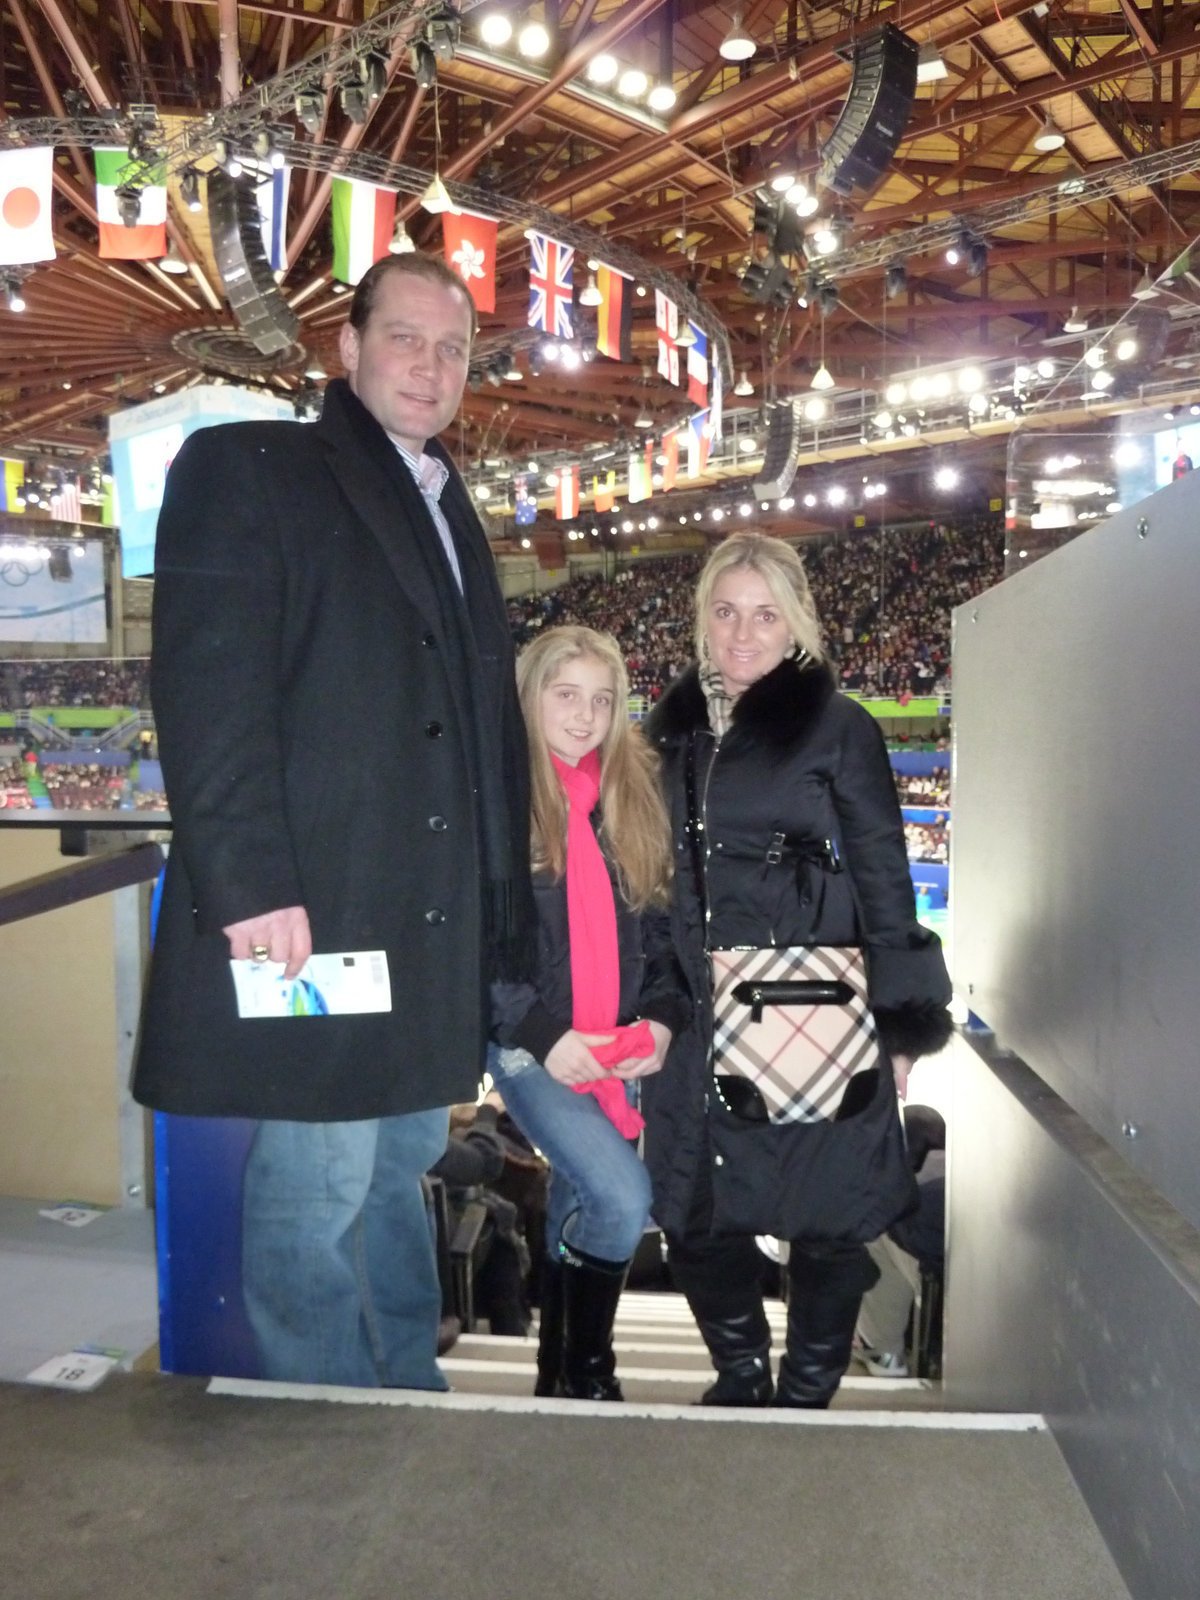 V roce 2010 byla ještě rodina spokojená, tehdy se vydali na olympiádu do Vancouveru.